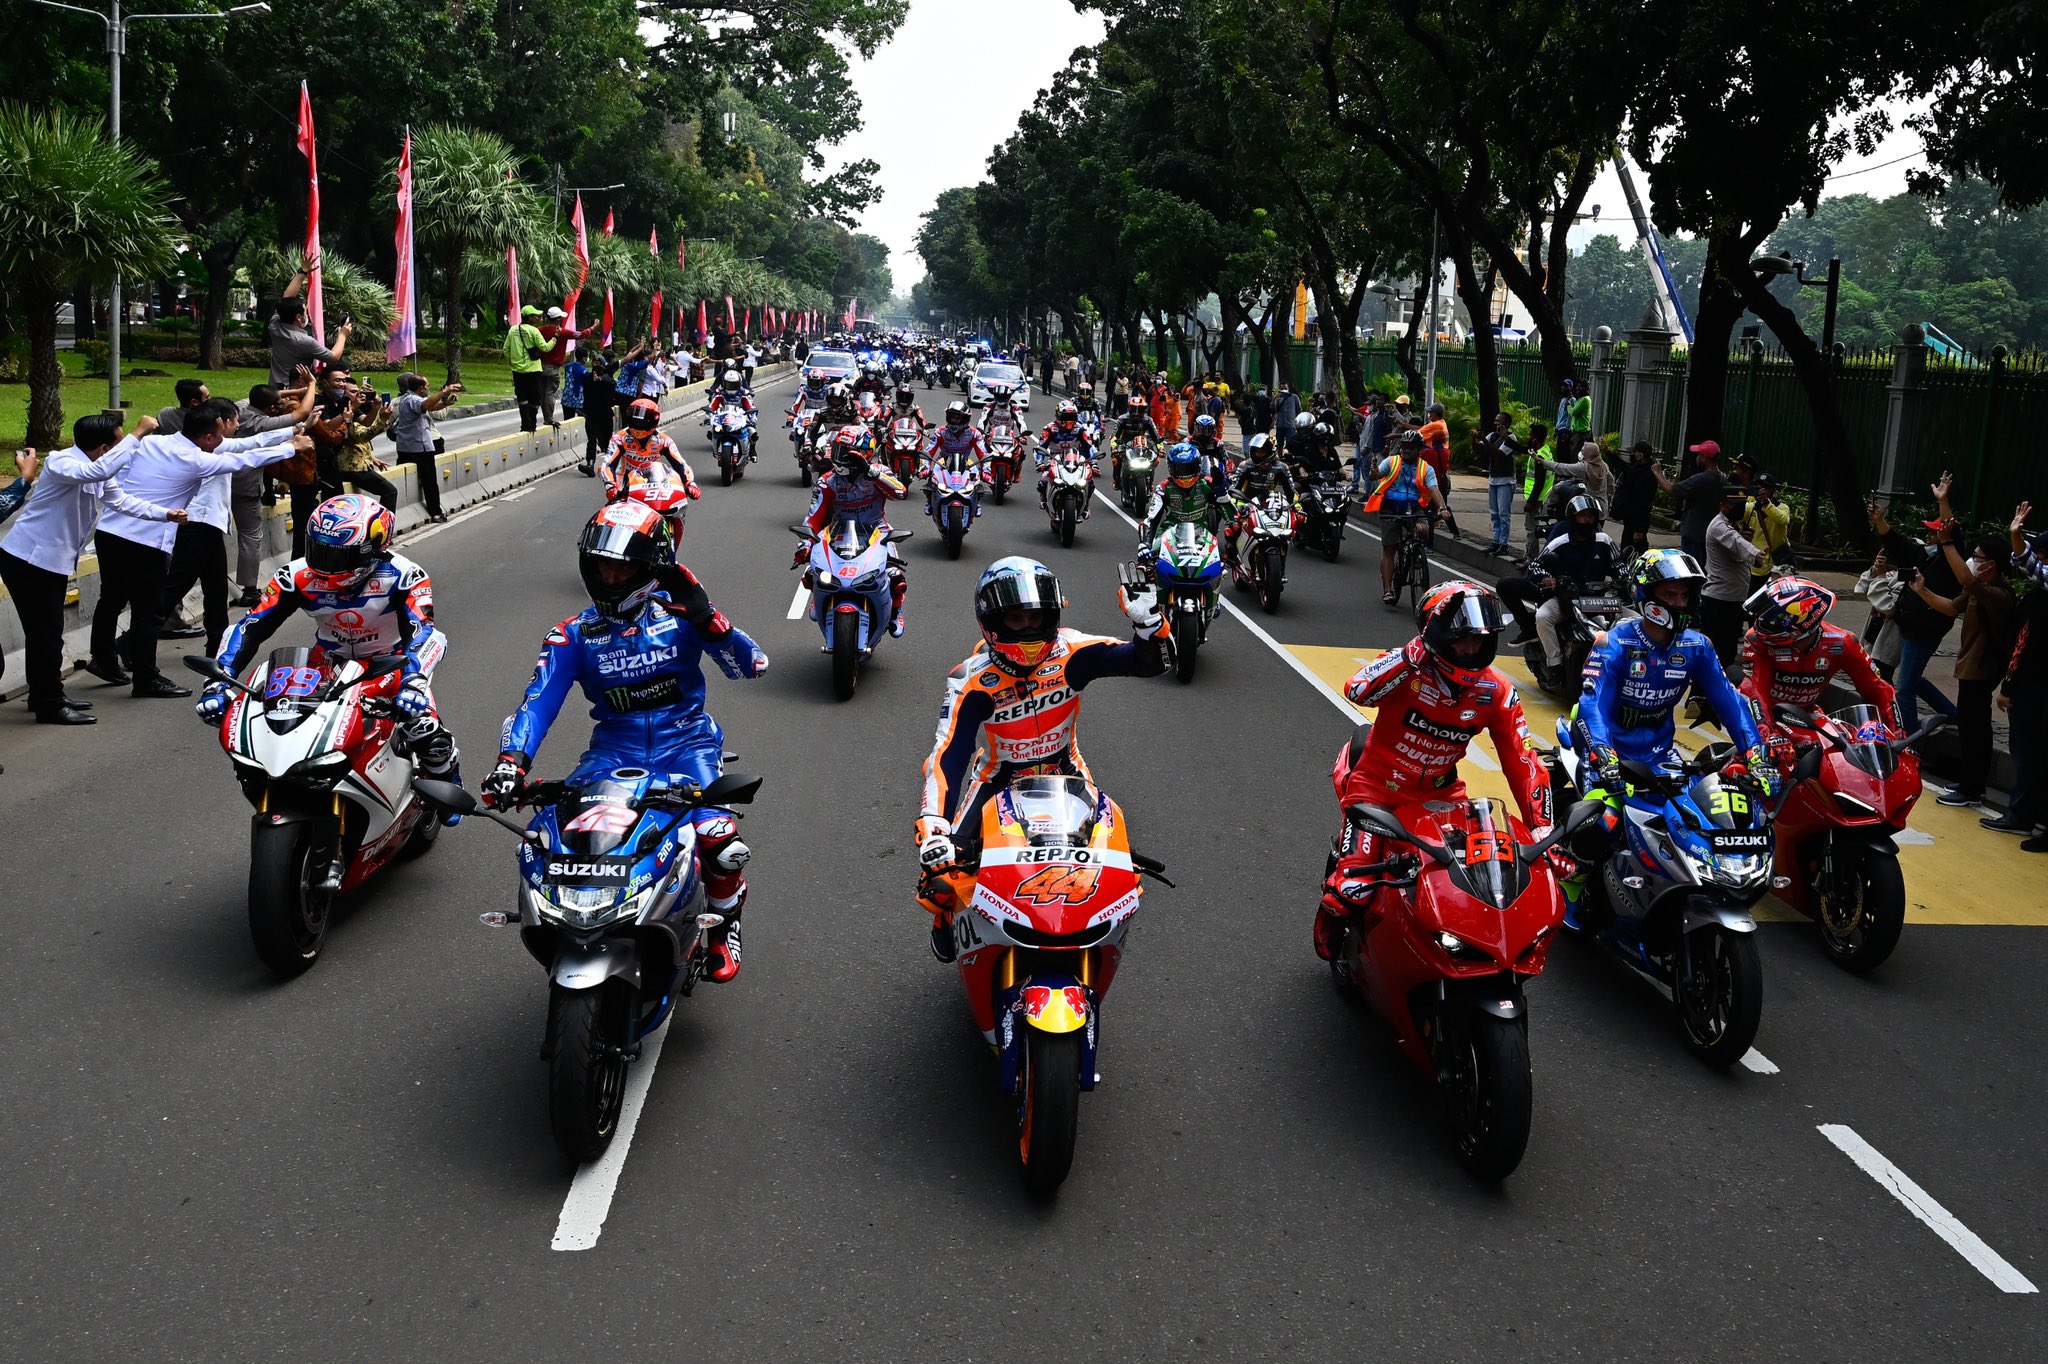 Simak! Ini Full Video Parade Pembalap MotoGP di Jakarta, Gratis Bradsis...